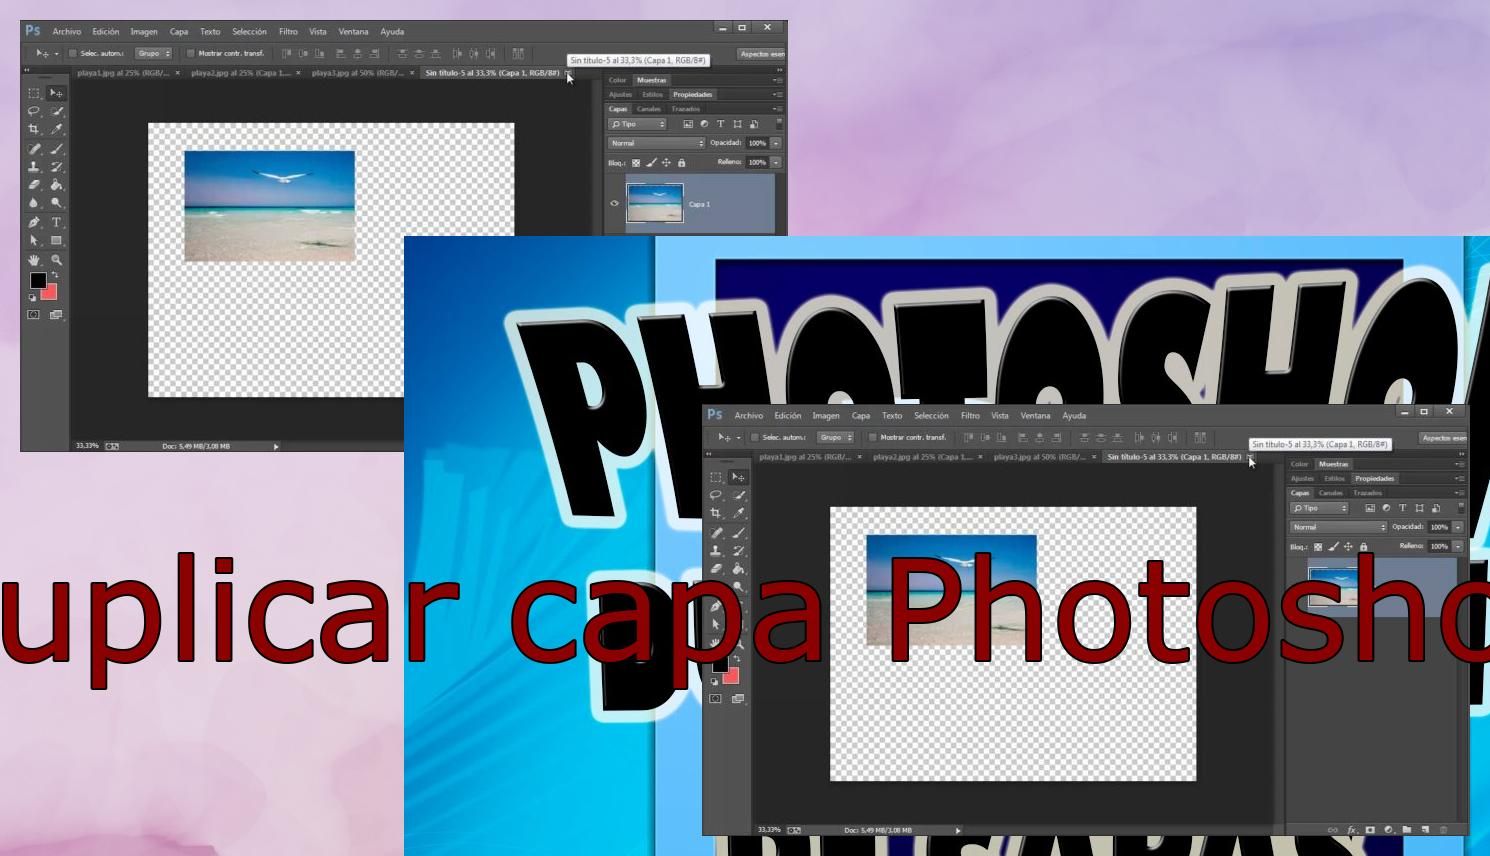 Duplicar capa en Photoshop..